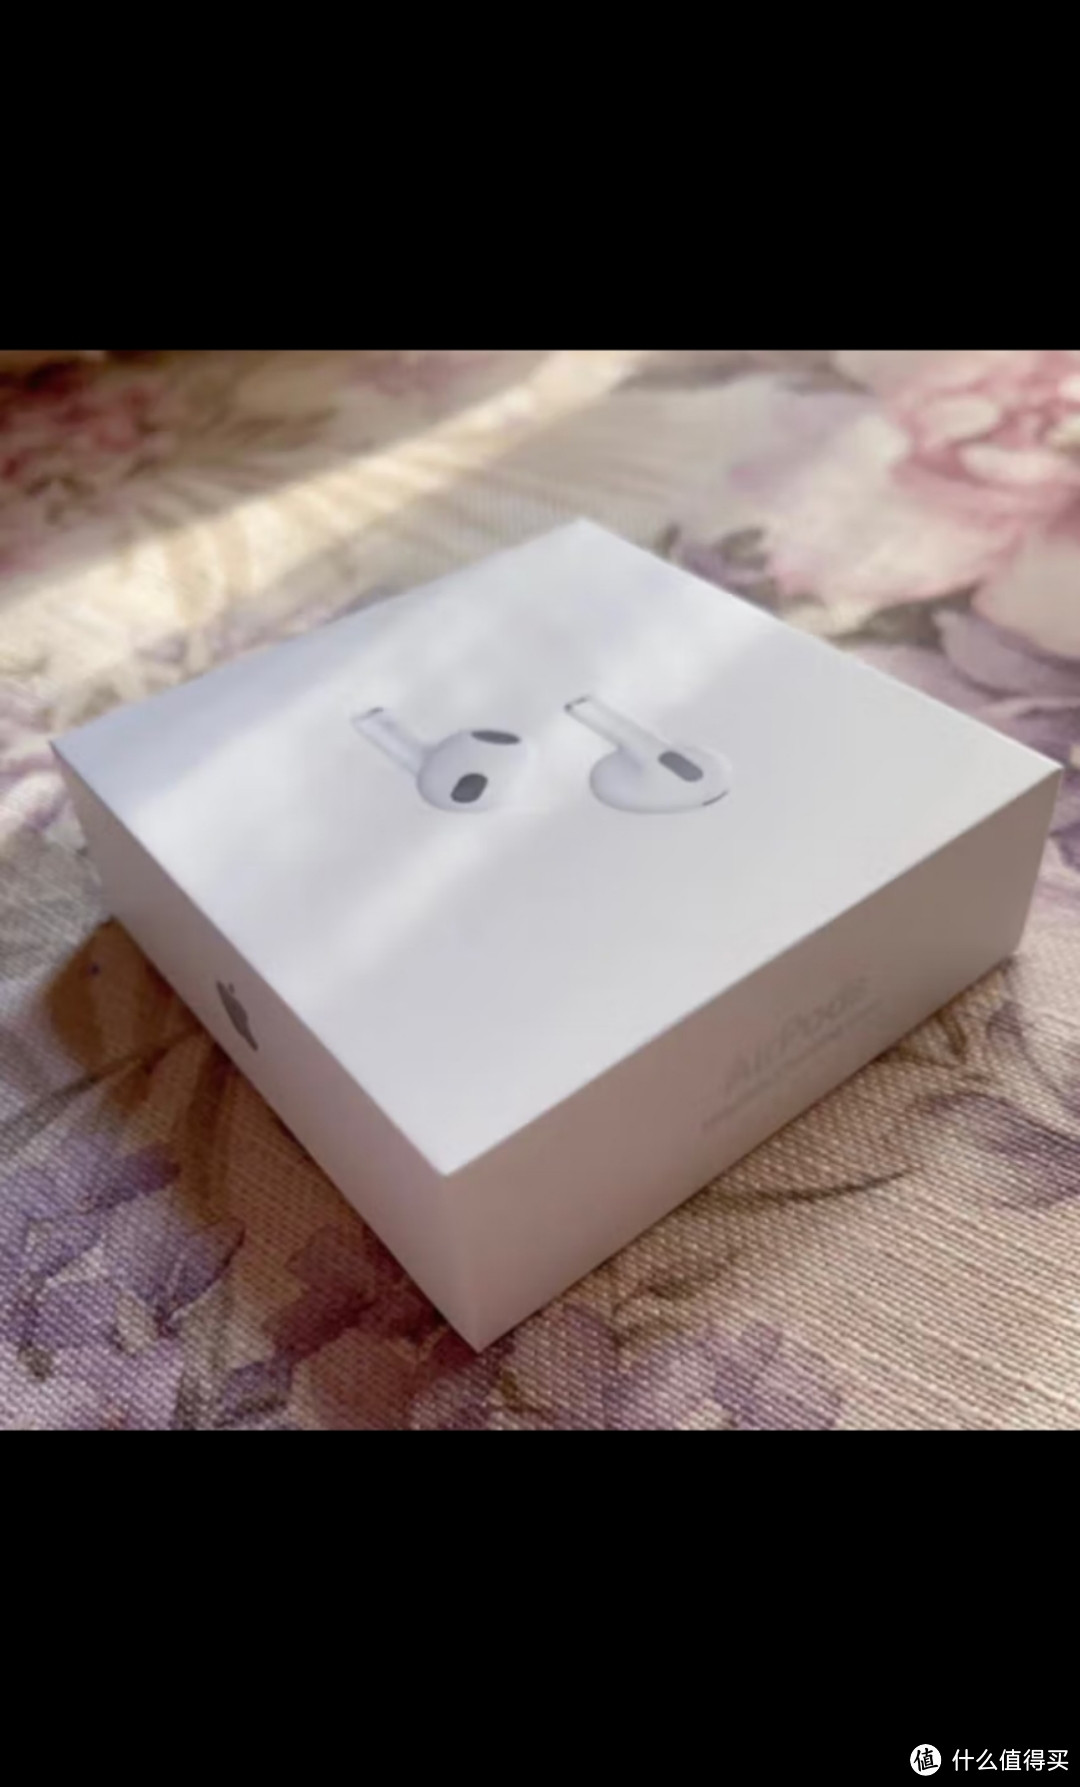 Apple AirPods (第三代) 配闪电充电盒 无线蓝牙耳机 Apple耳机 适用iPhone/iPad/Apple WatchApple AirP